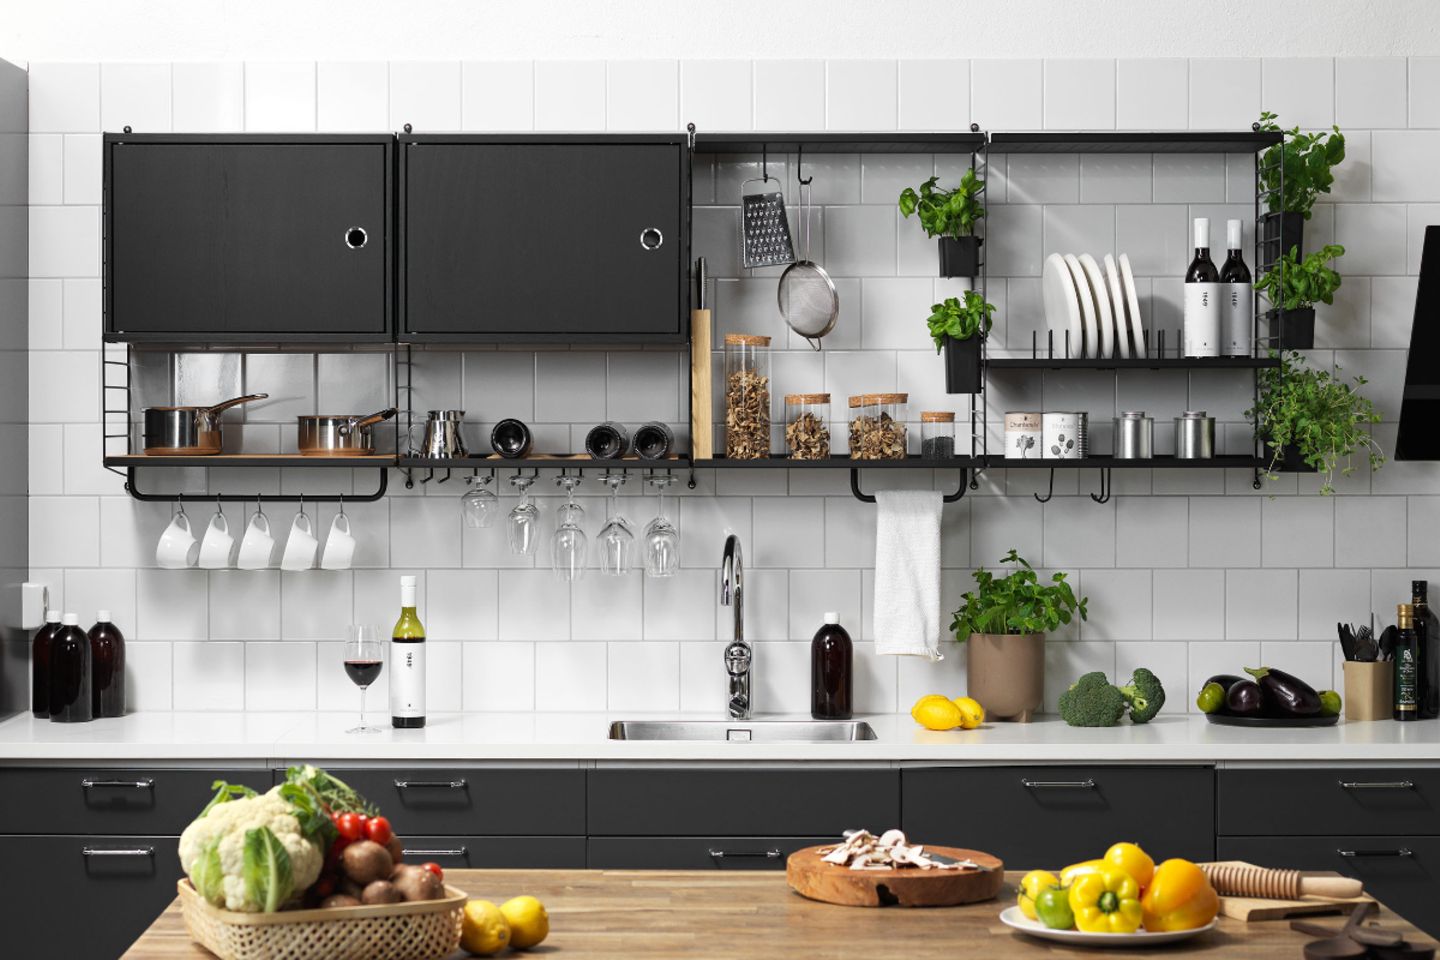 Küchensystem in schwarz von String mit Regalen, Stangen, Haken